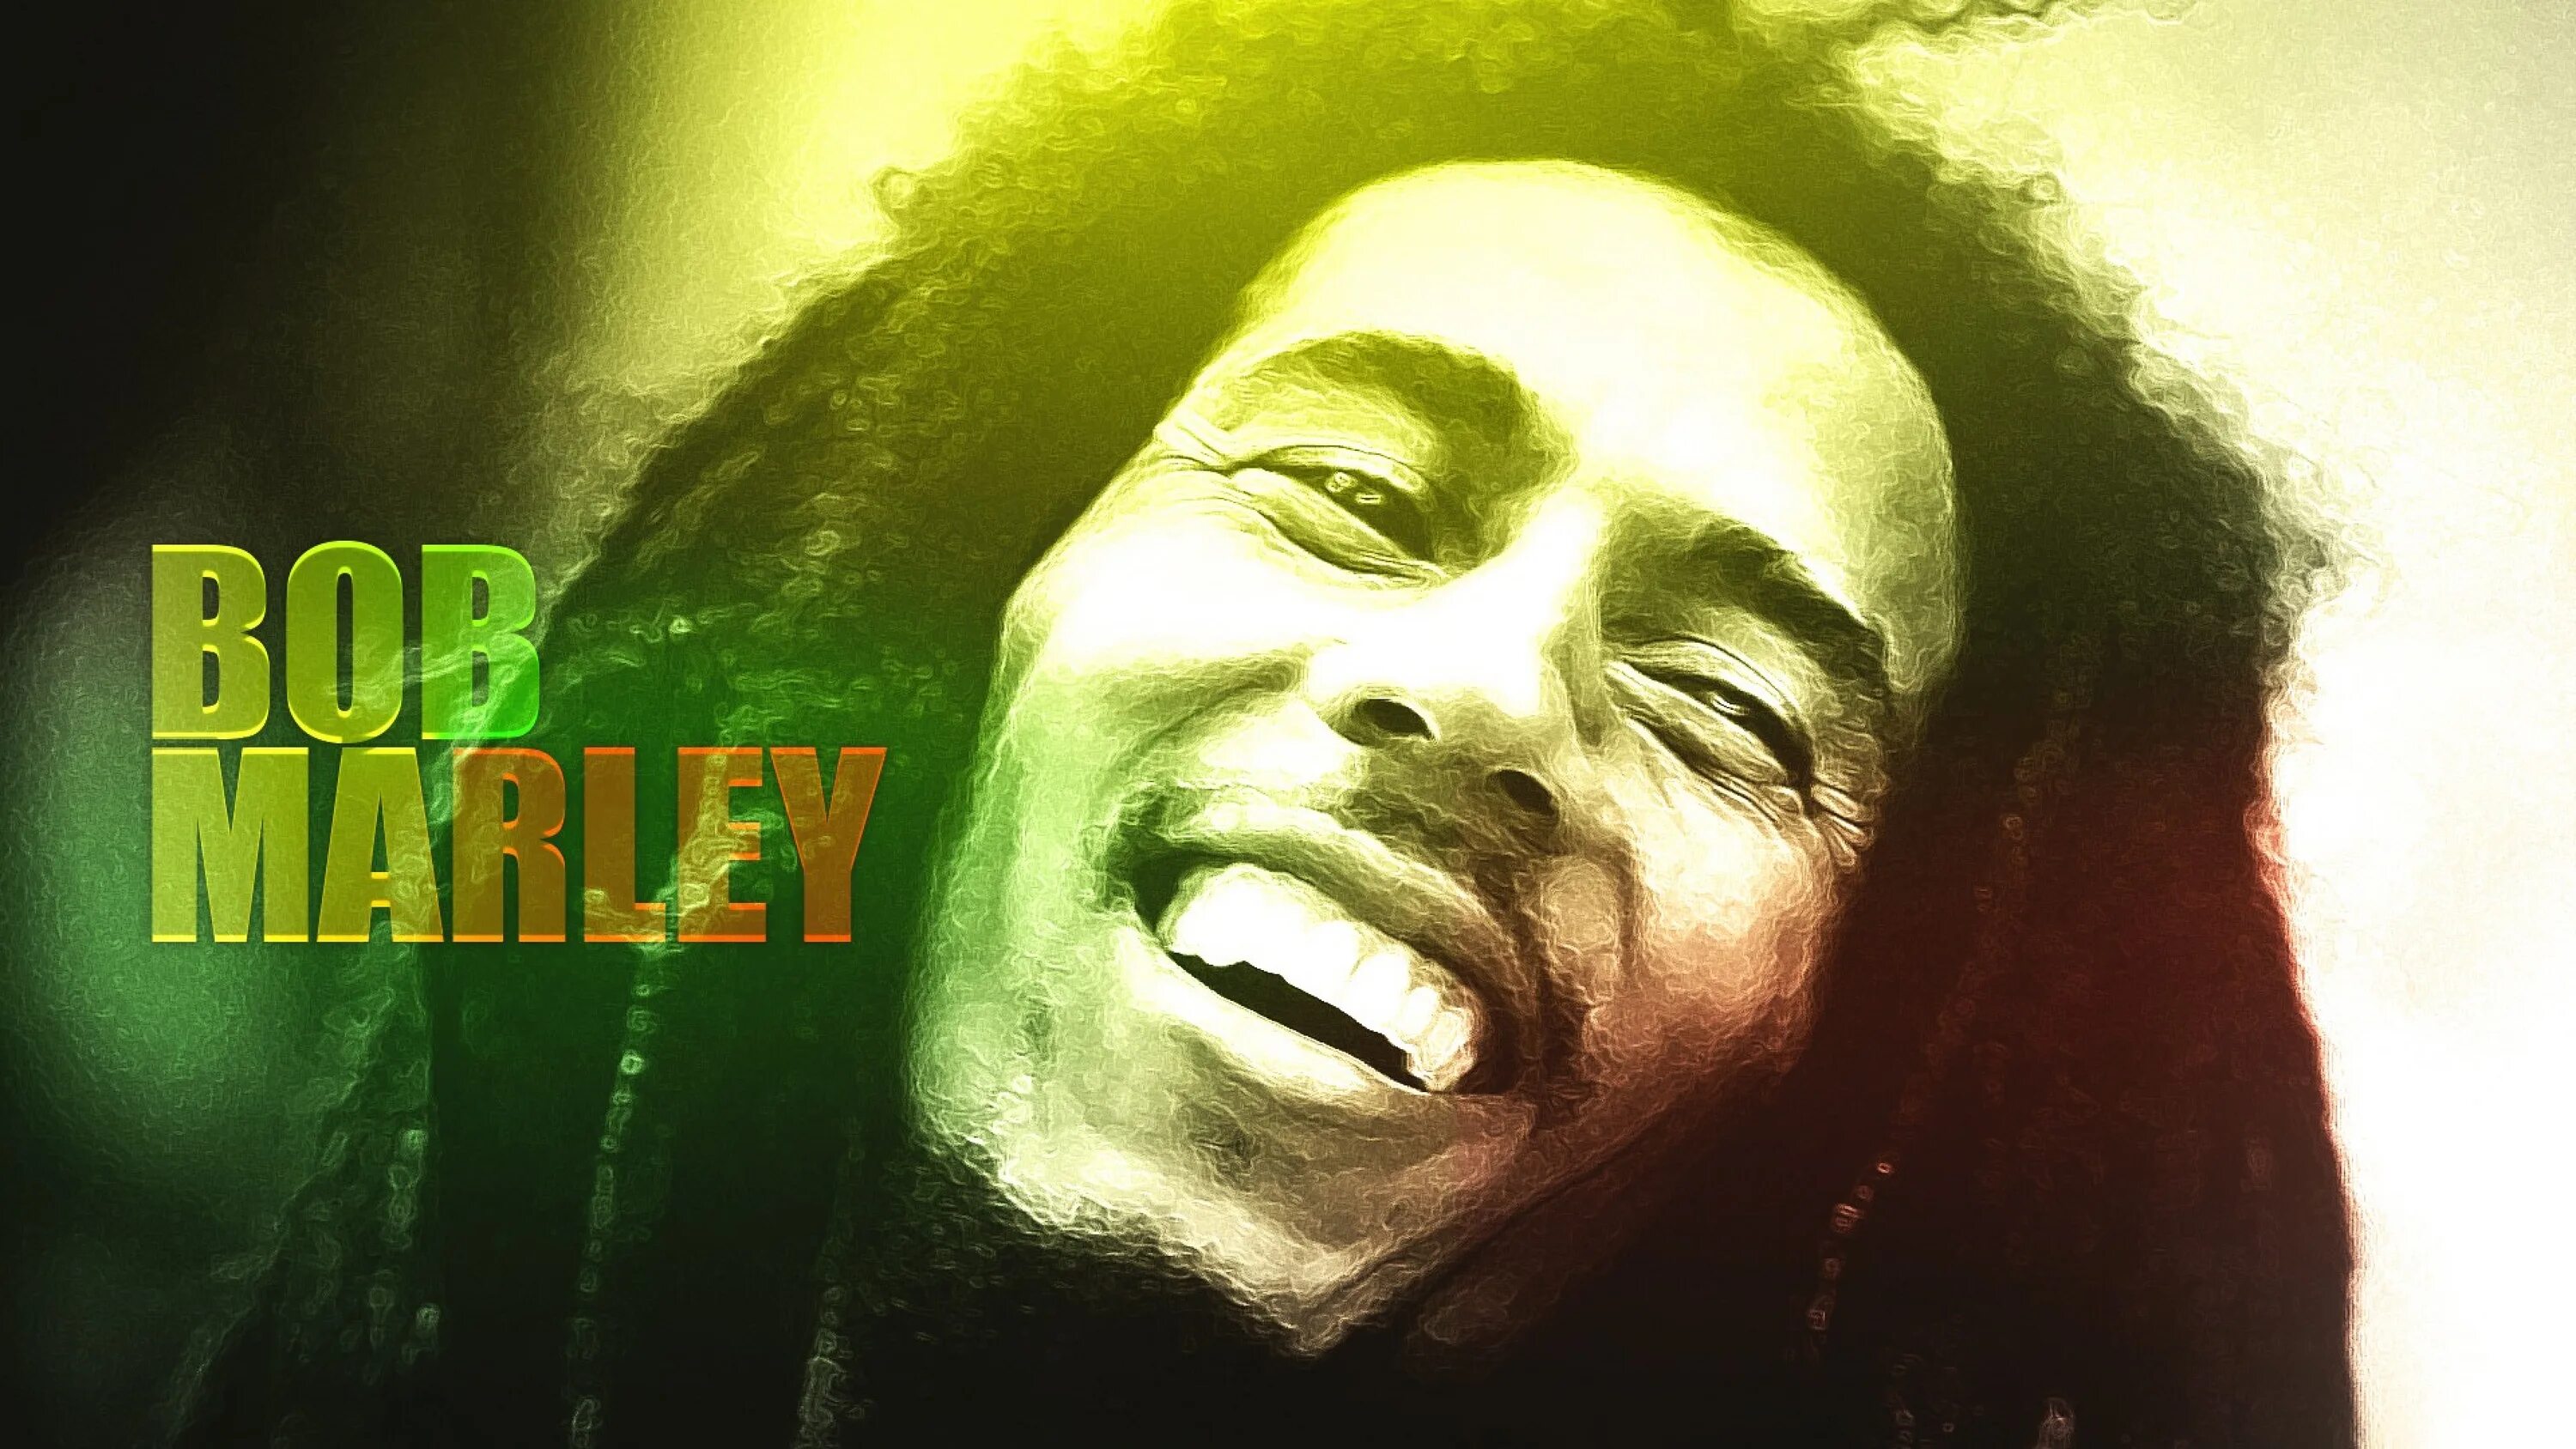 Боб Марли. Боб Марли фото. Боб Марли обои. Bob Marley 1965. Bad boy marley